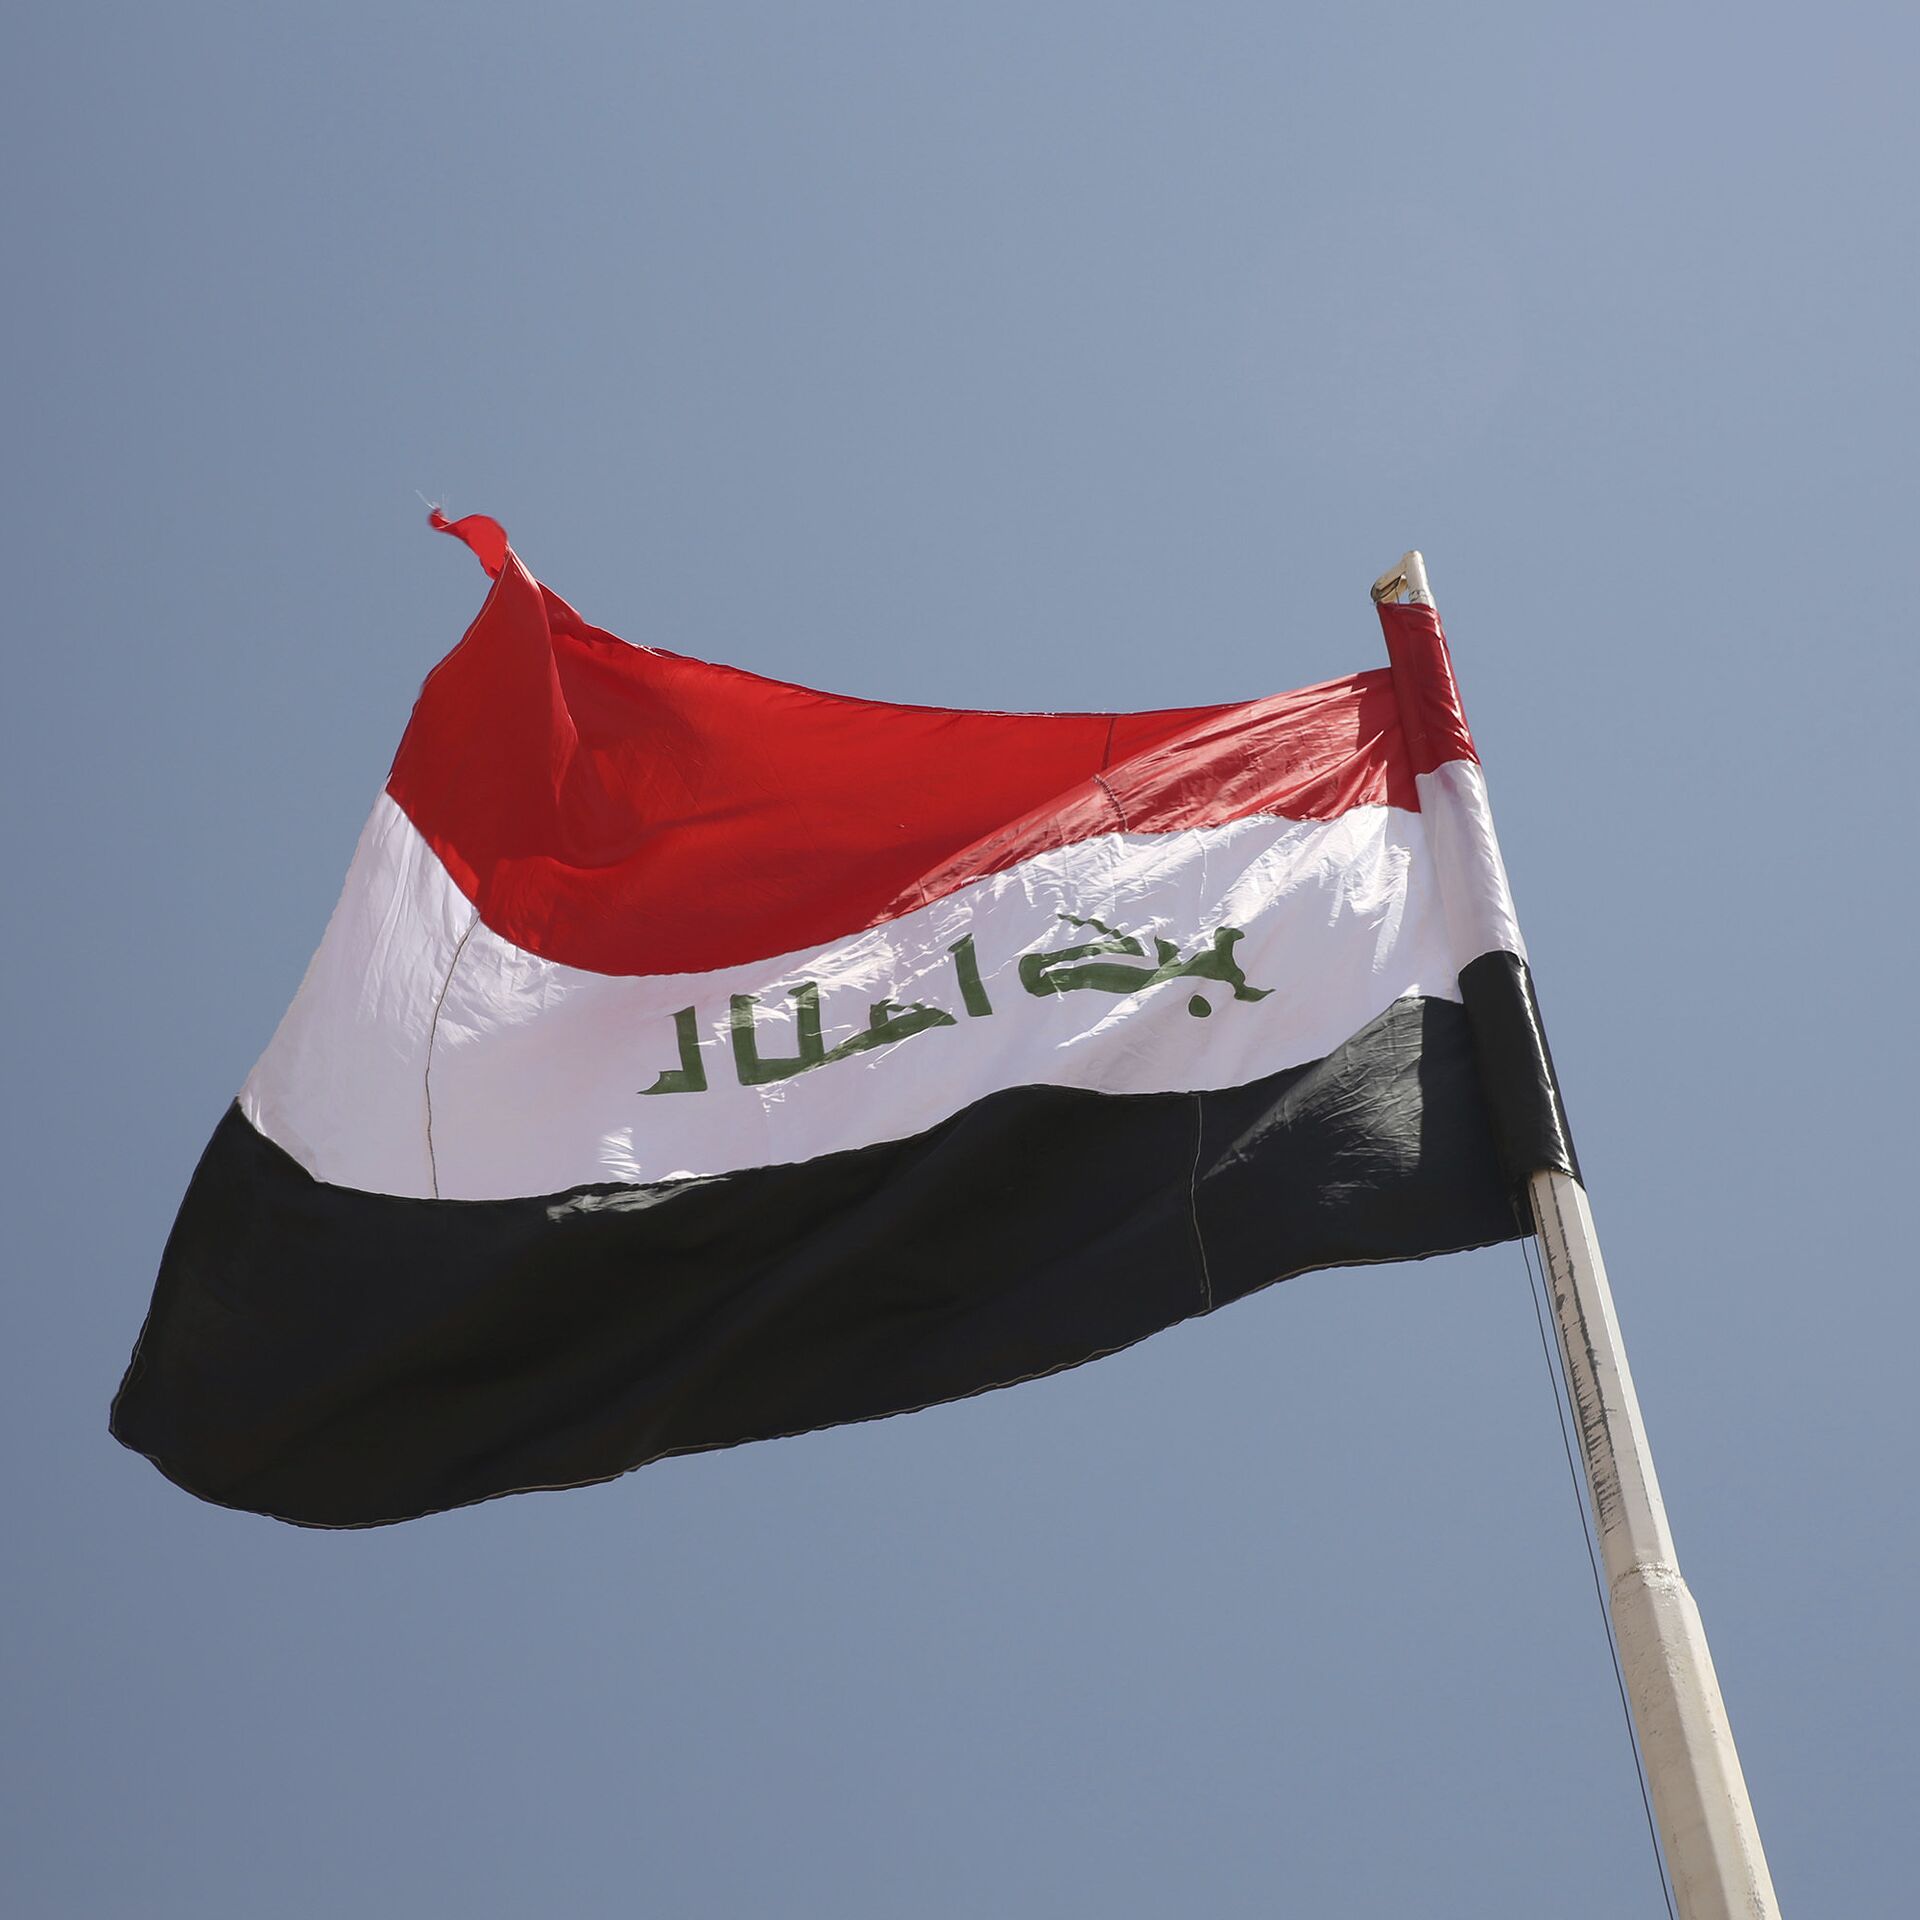 اتفاق سياسى فى العراق على مبادئ تشكيل "الحكومة المحلية" فى كركوك